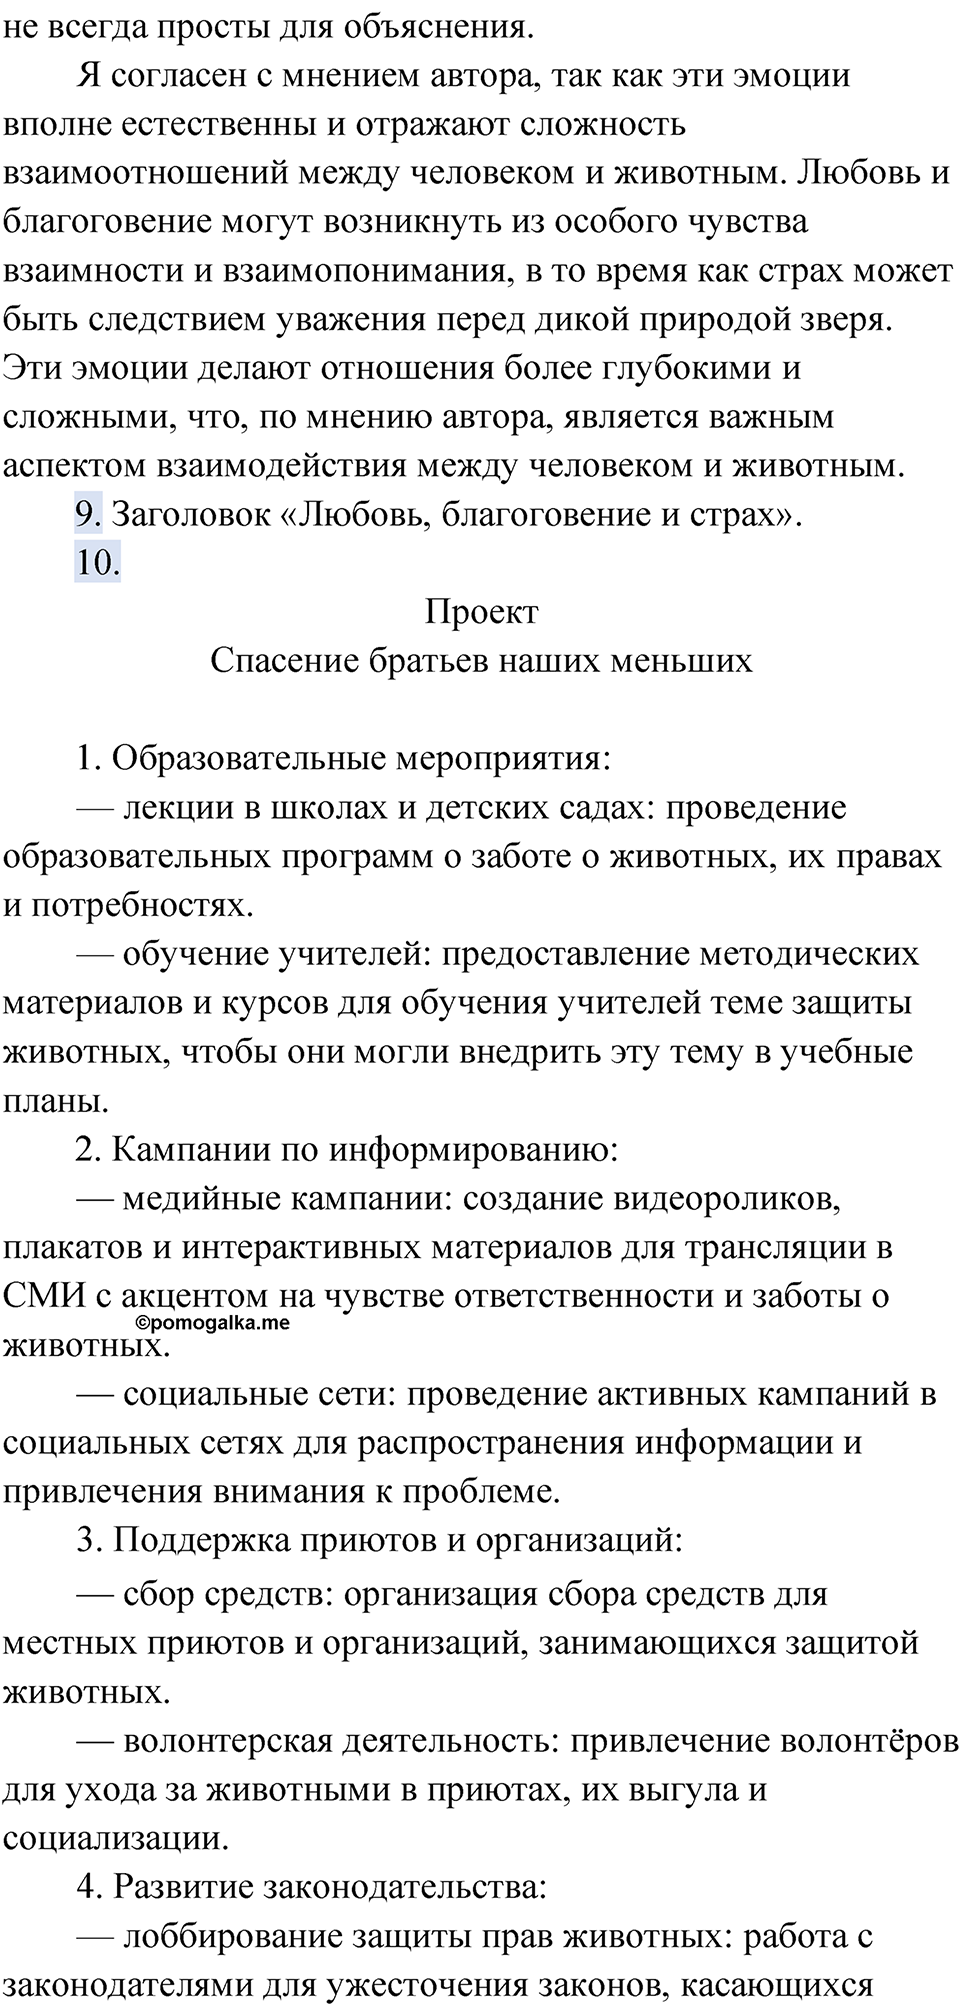 страница 101 упражнение 68 русский язык 9 класс Быстрова 2 часть 2022 год